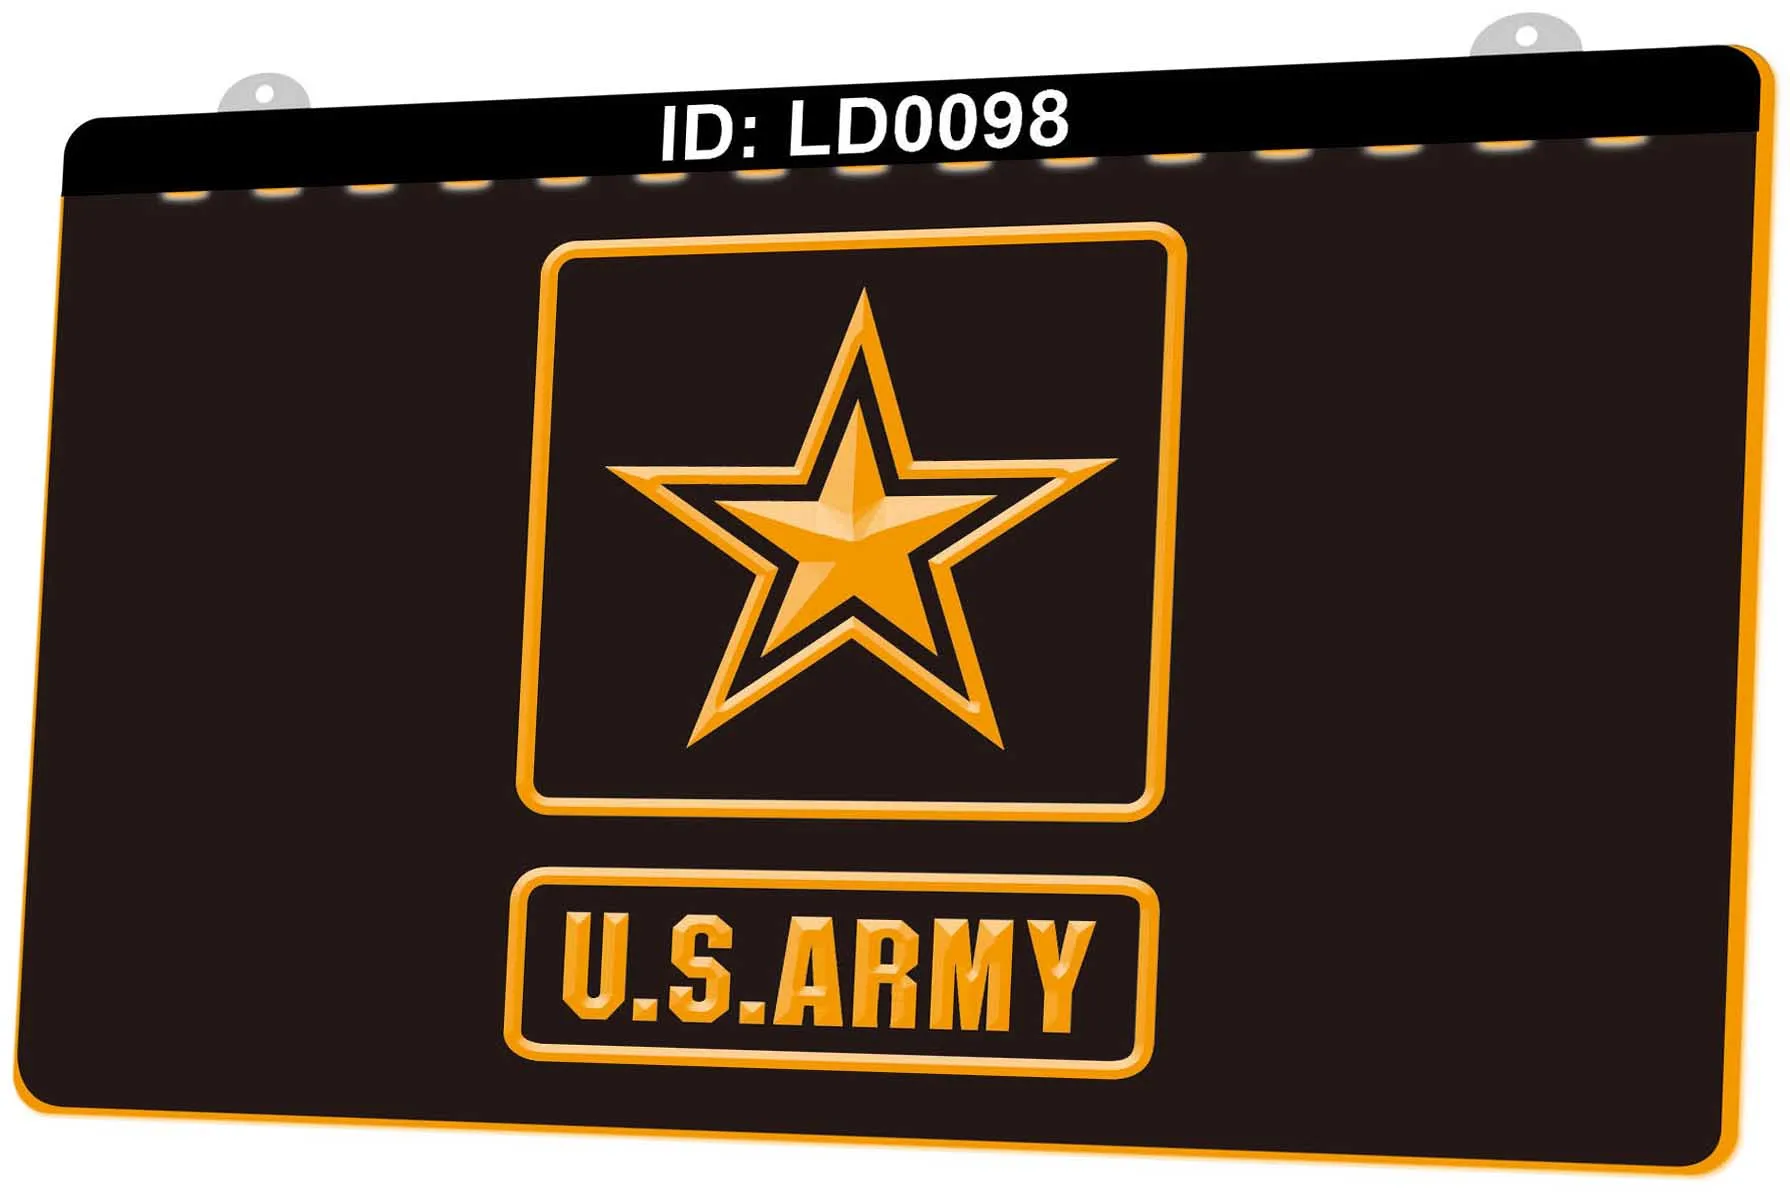 LD0098 Vendita al dettaglio all'ingrosso di segni luminosi a LED con incisione 3D dell'esercito americano